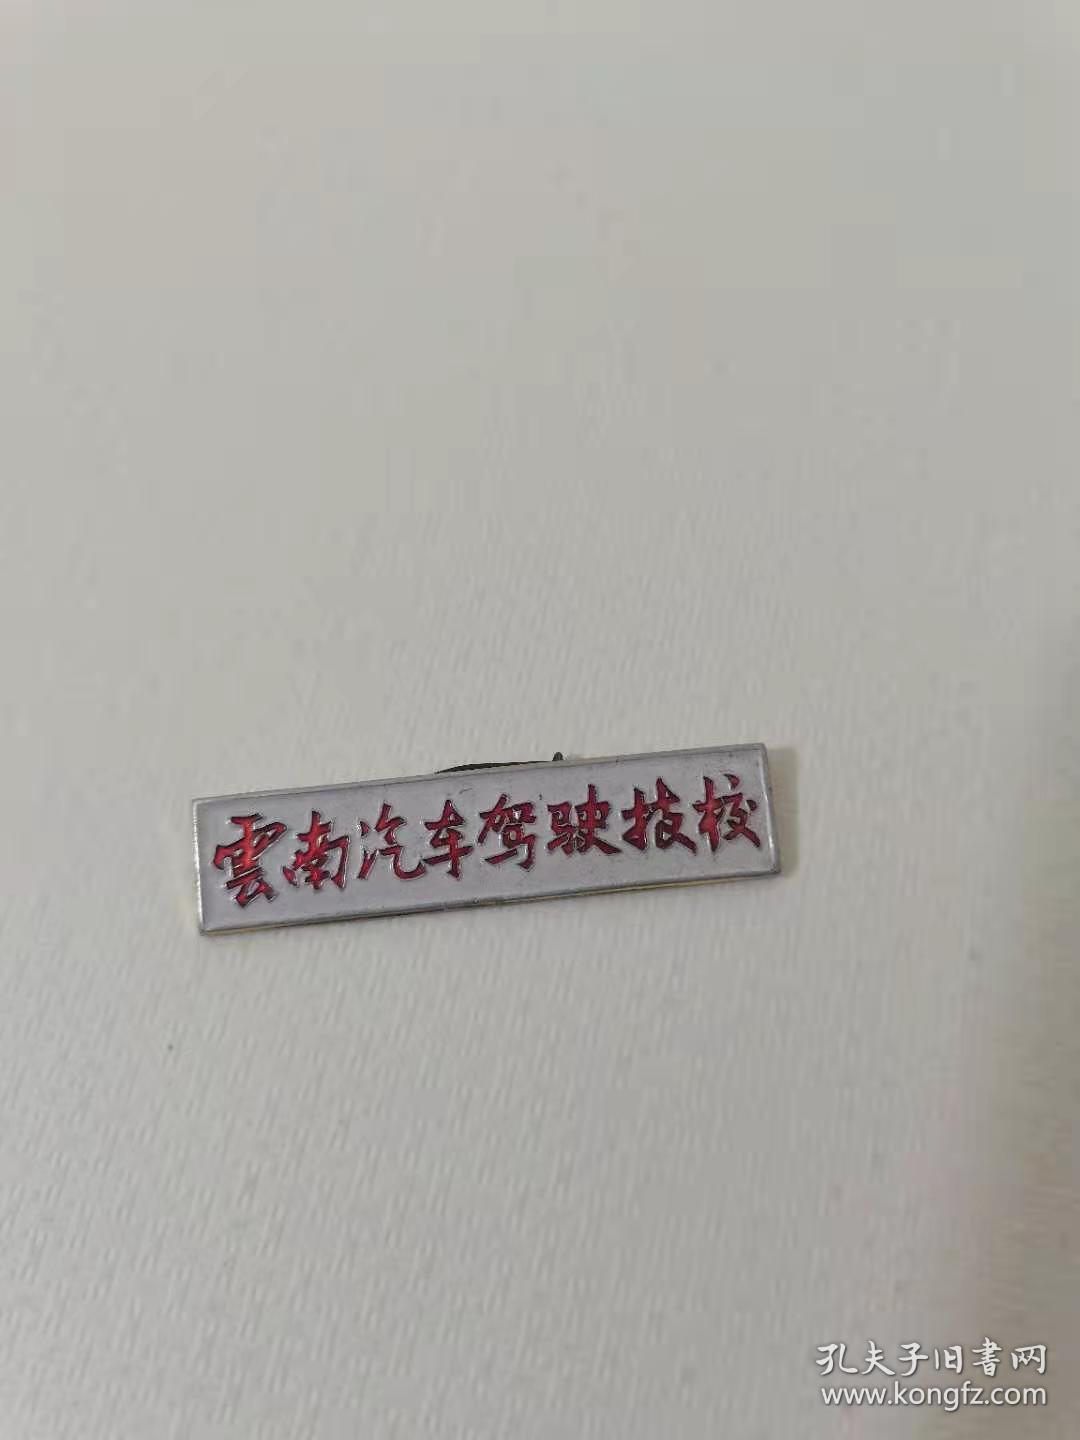 云南驾驶 技校老徽章，
60元。保真